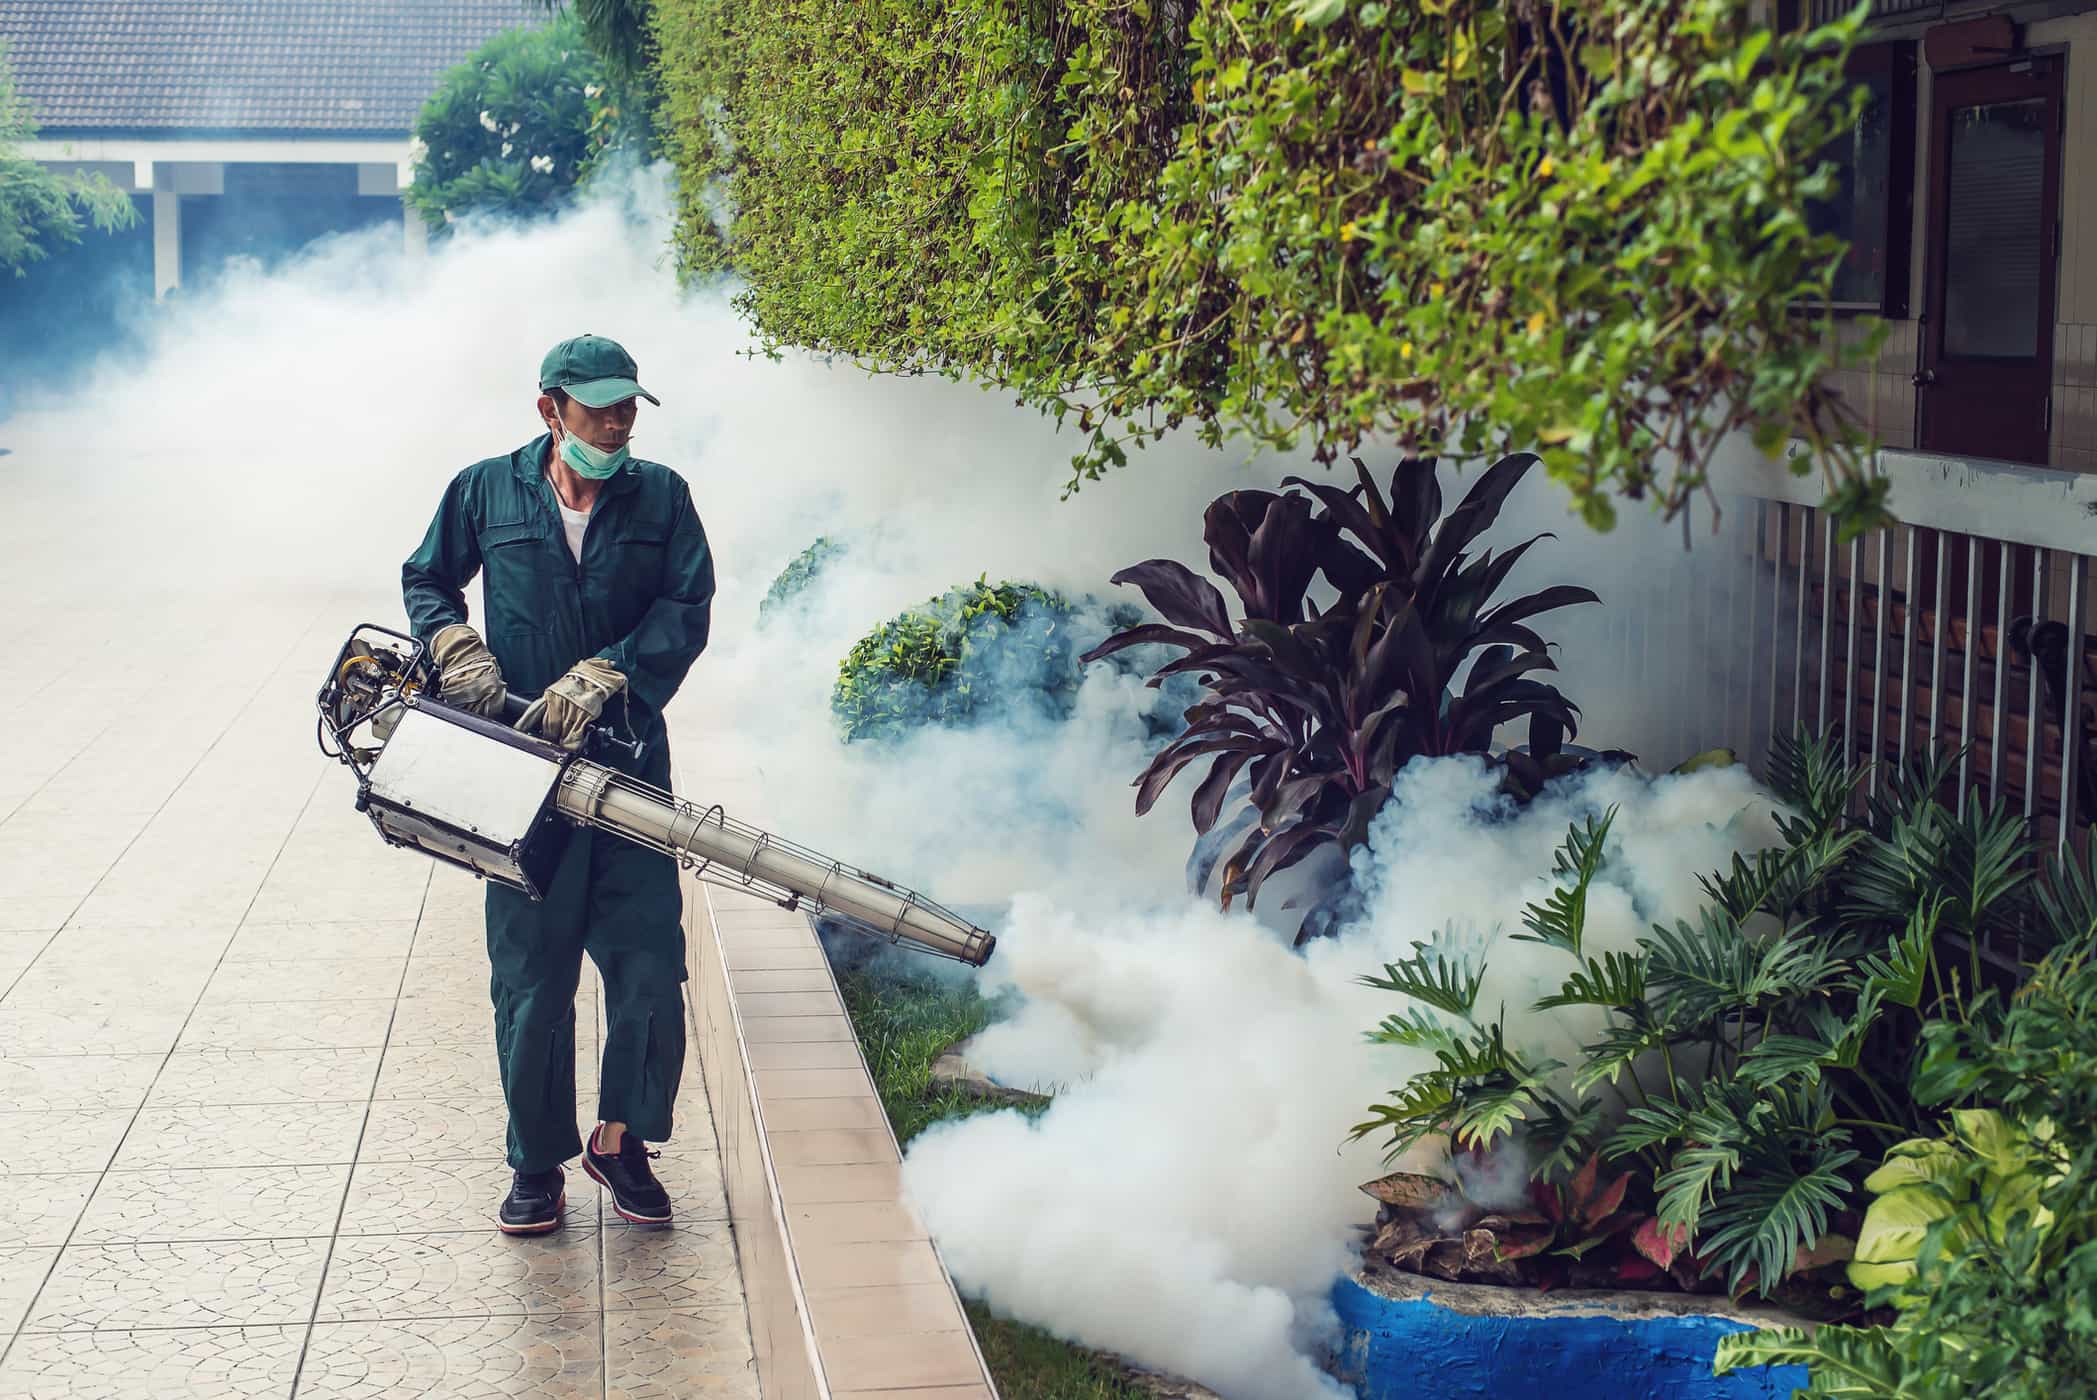 Cuidado, es peligroso si inhalamos gas nebulizador de mosquitos